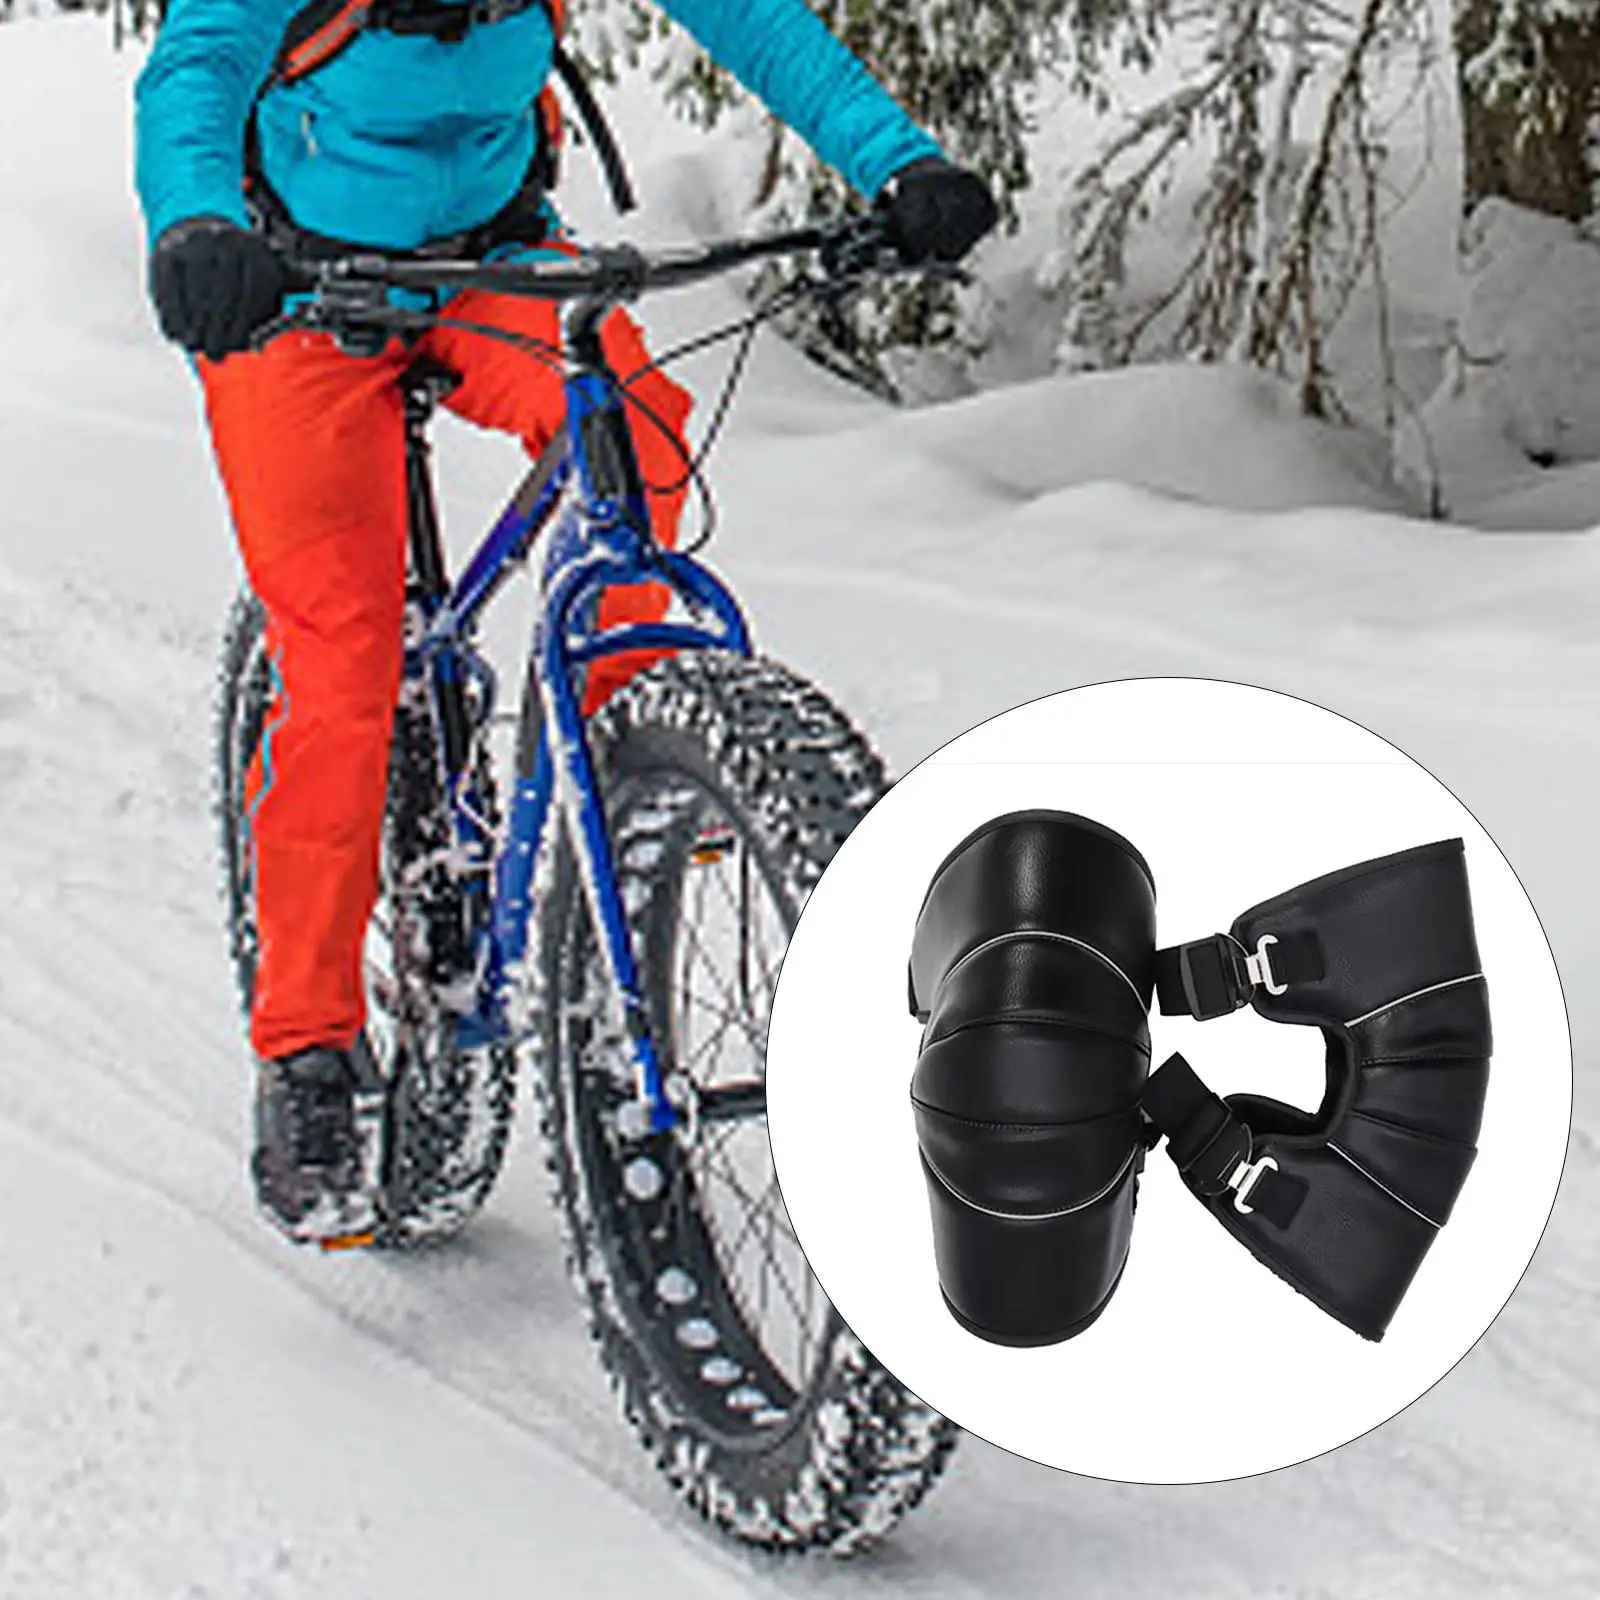 2Pcs Winter Knee Pads Leggings Motorcycles Waterproof Leg Sleeve Protective Gear